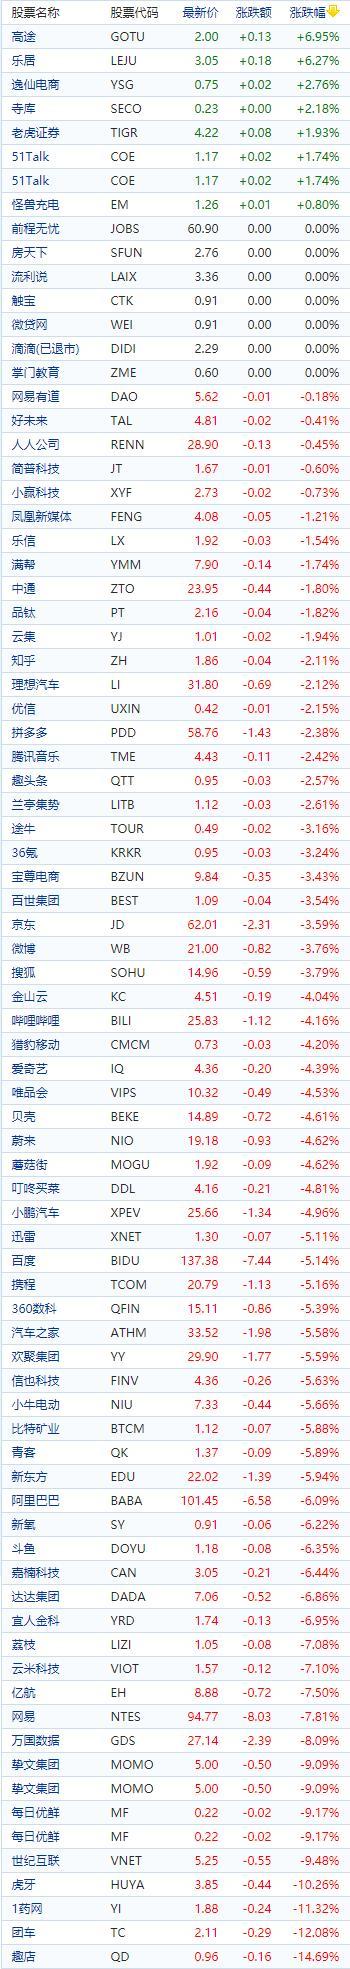 中国概念股收盘普遍下跌 雾芯科技逆势涨逾10%、趣店跌超12%